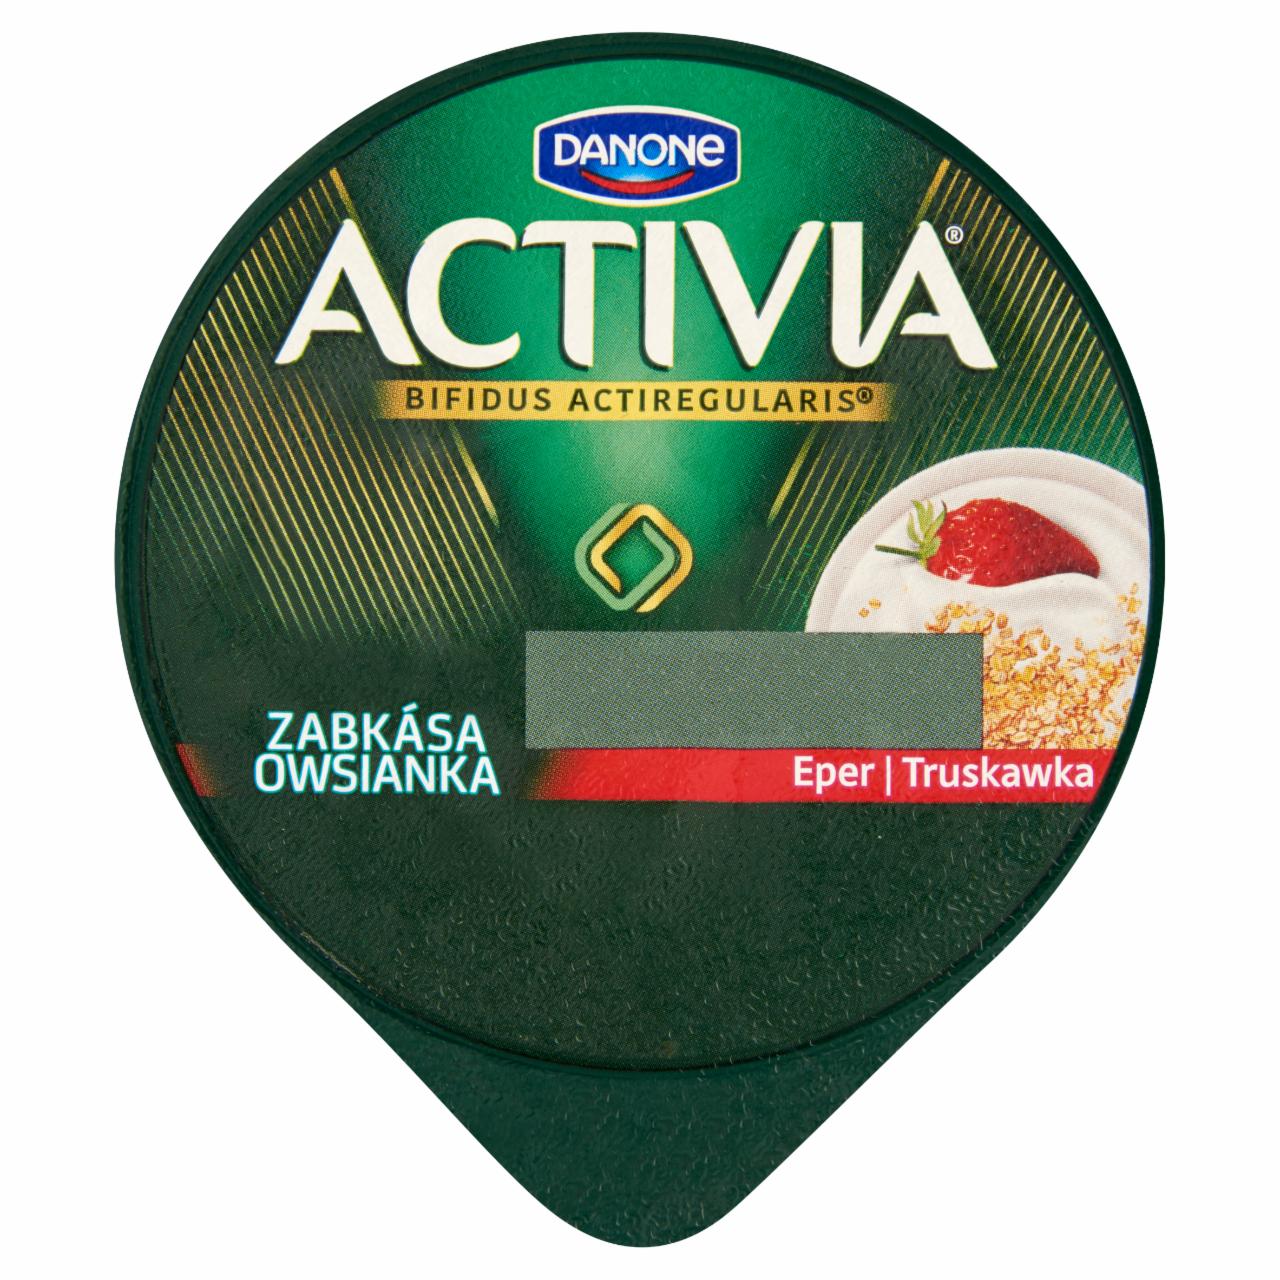 Képek - Danone Activia élőflórás zsírszegény joghurt zabkásával és eperrel 180 g